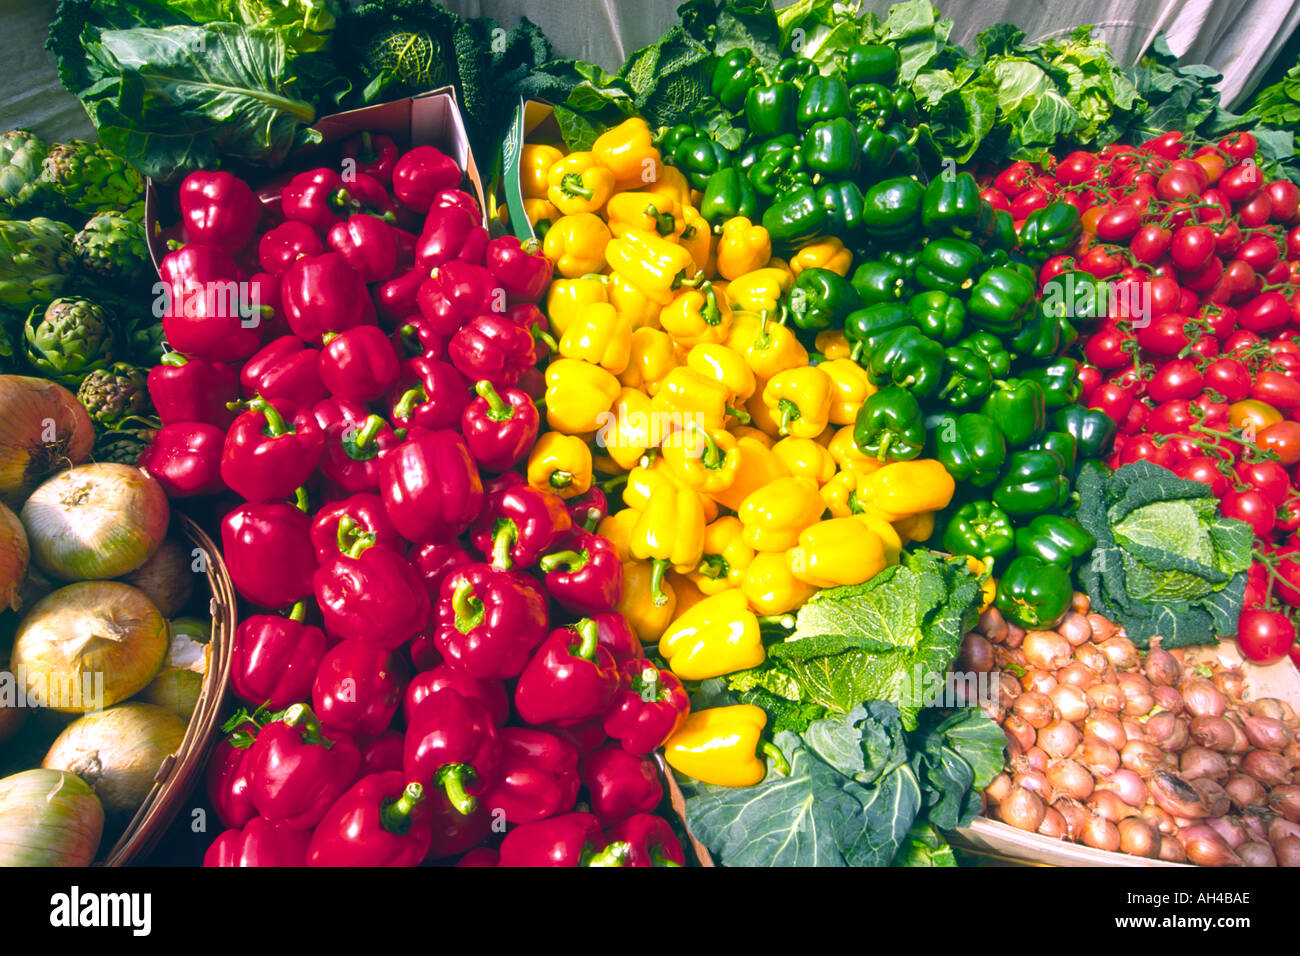 Surtido de verduras como cebollas, tomates, coles y rojos, verdes y pimientos amarillos en un puesto en el mercado. Foto de stock